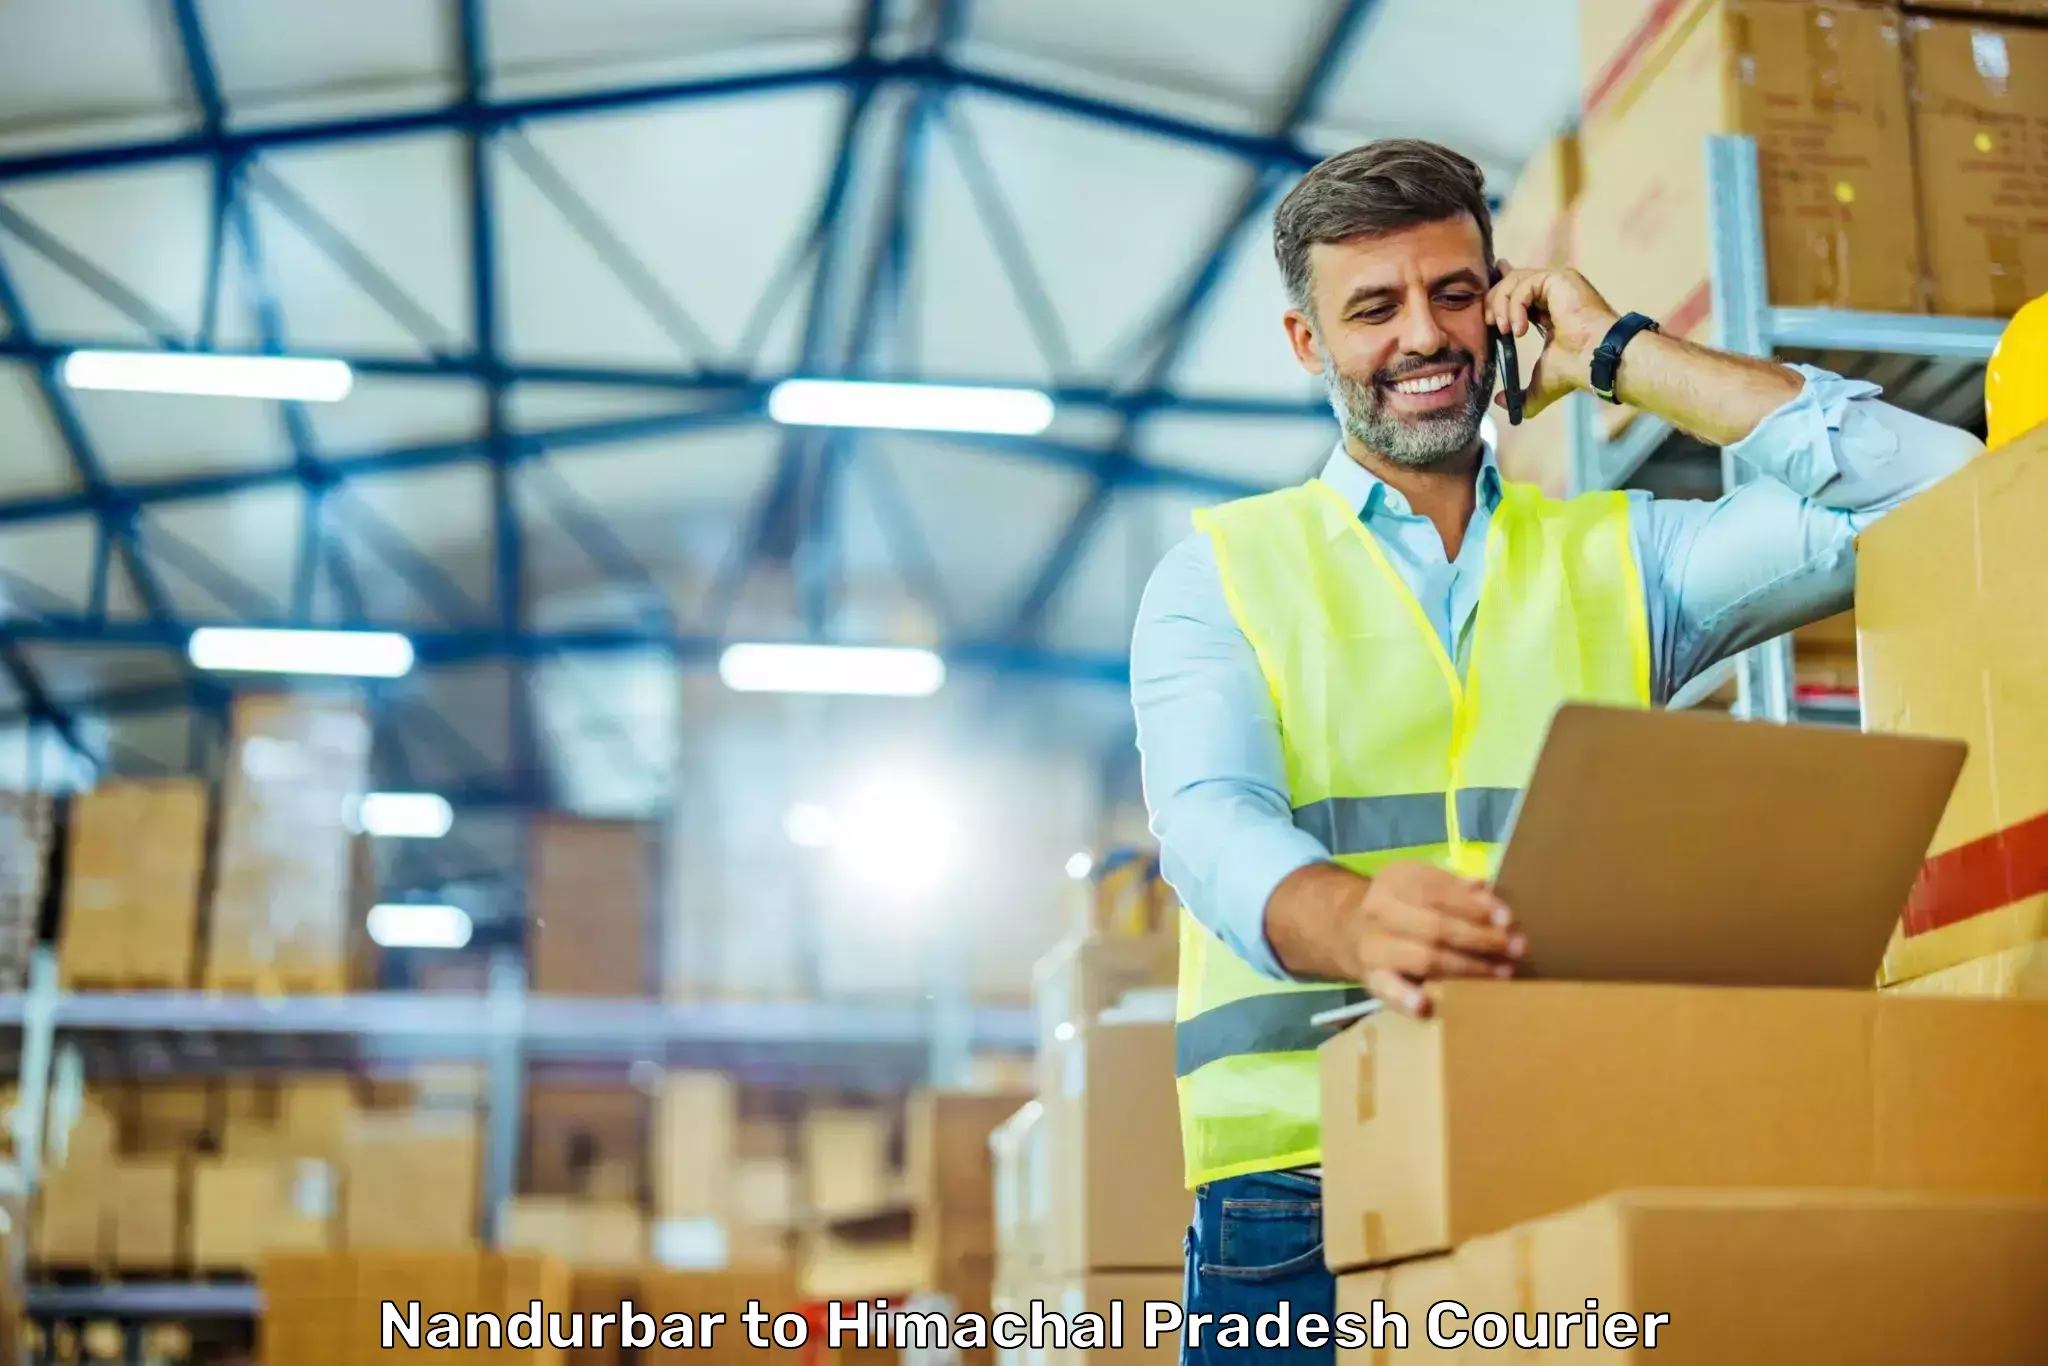 Smart shipping technology Nandurbar to Ghumarwin